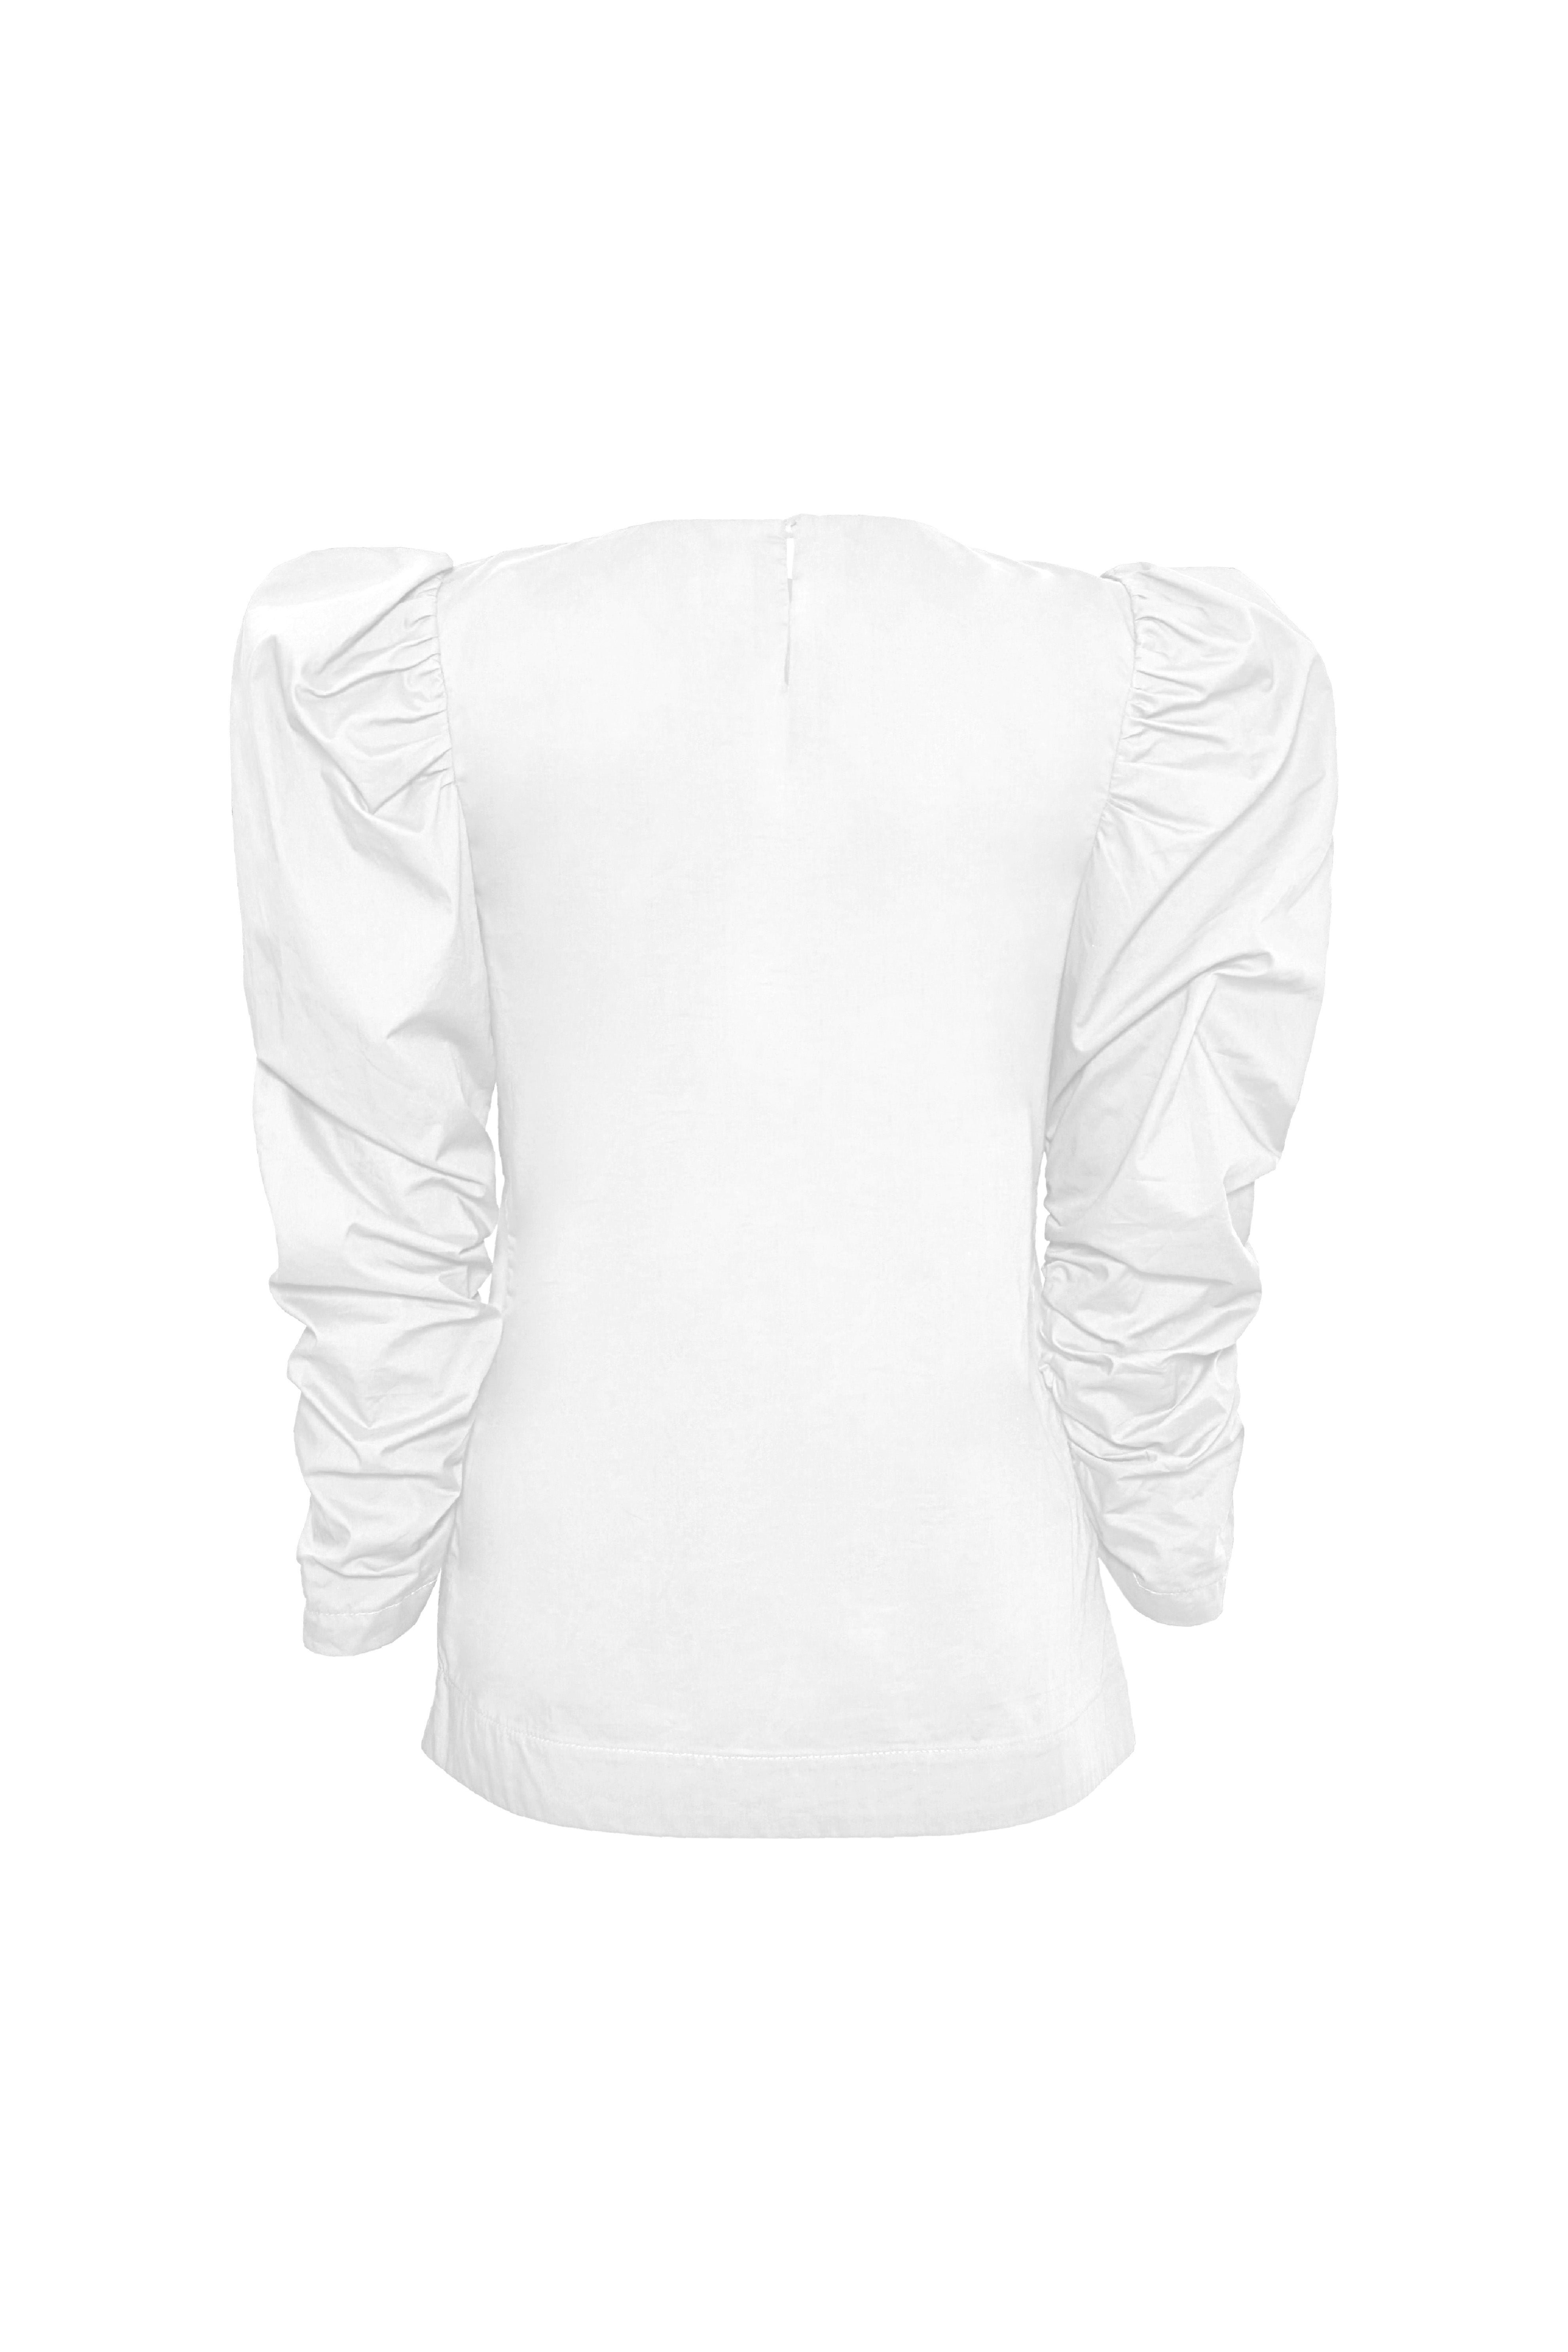 Florencia white blouse